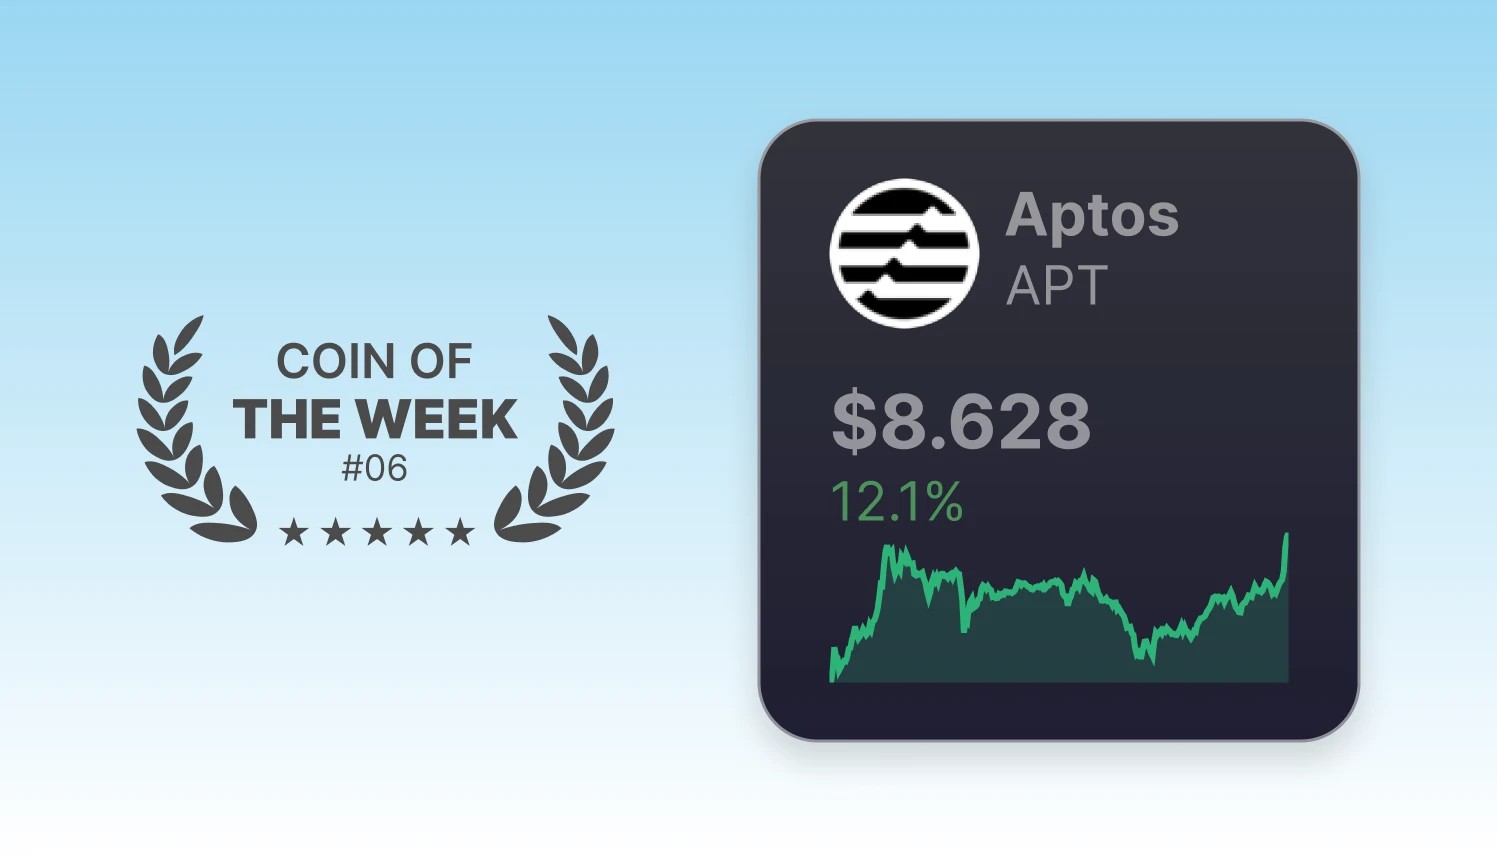 Coin Of The Week - APT - Week 06